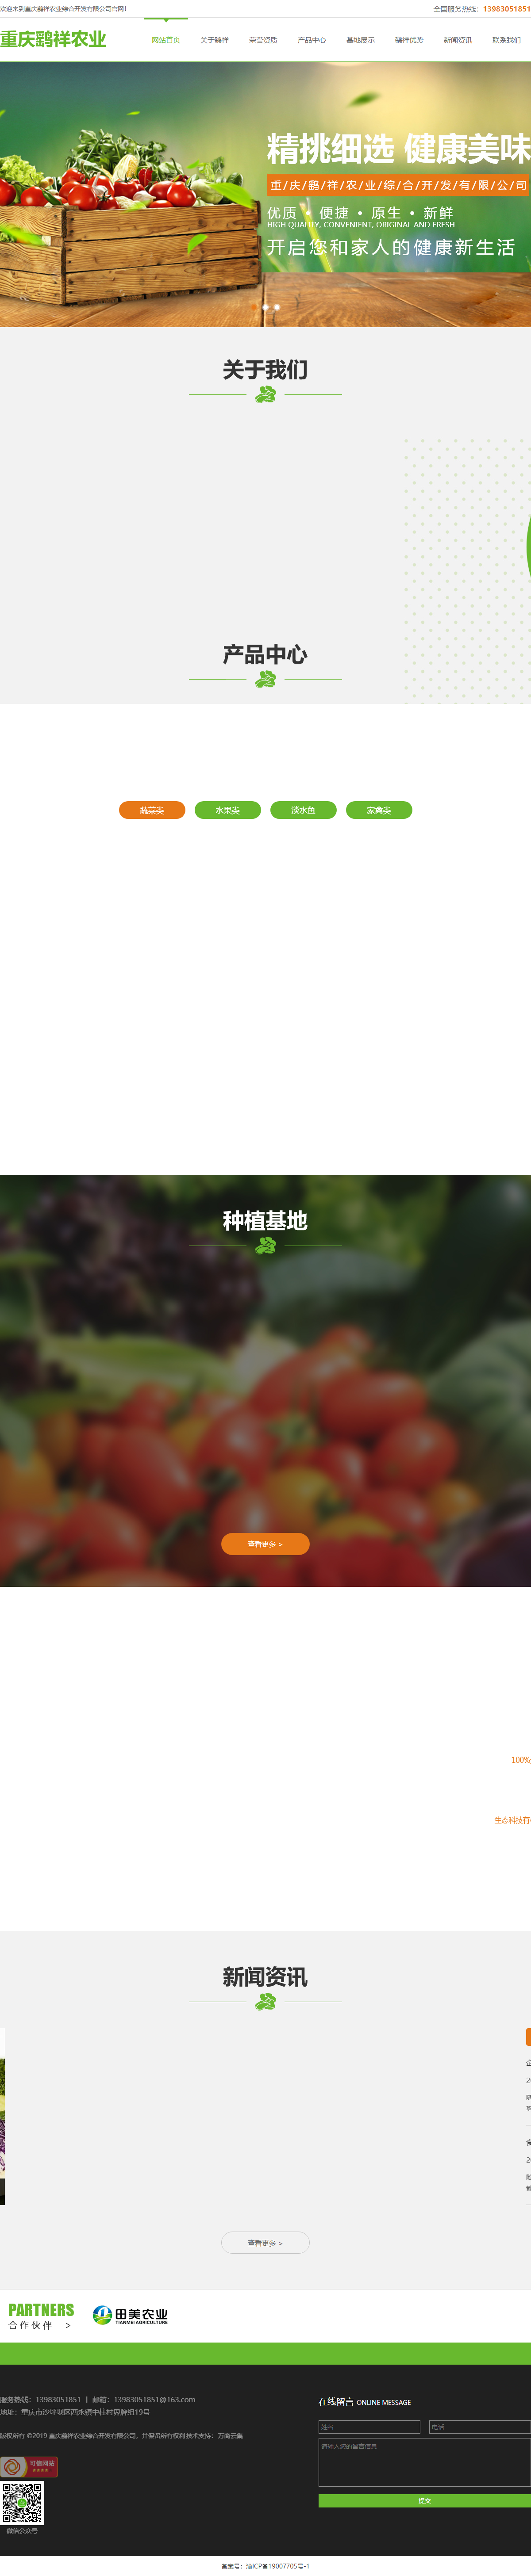 重庆鹞祥农业综合开发有限公司网站案例